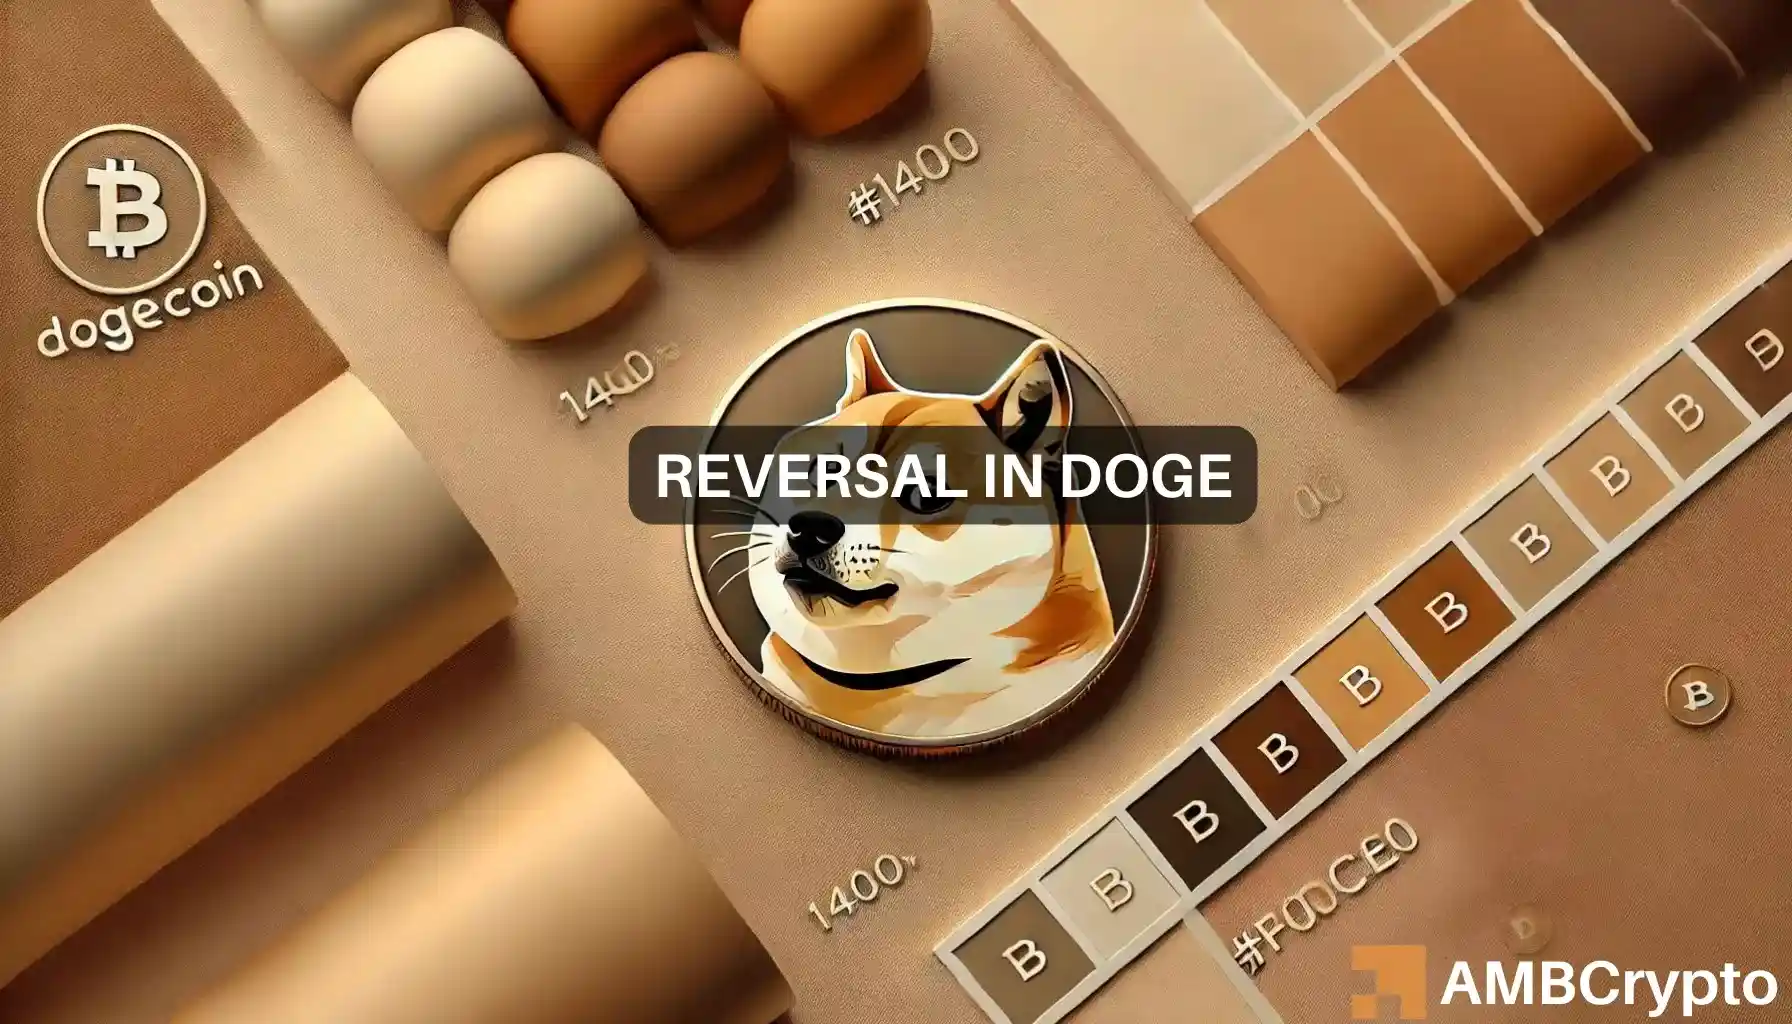 Is Dogecoin [DOGE] turning bullish? Key data suggests...